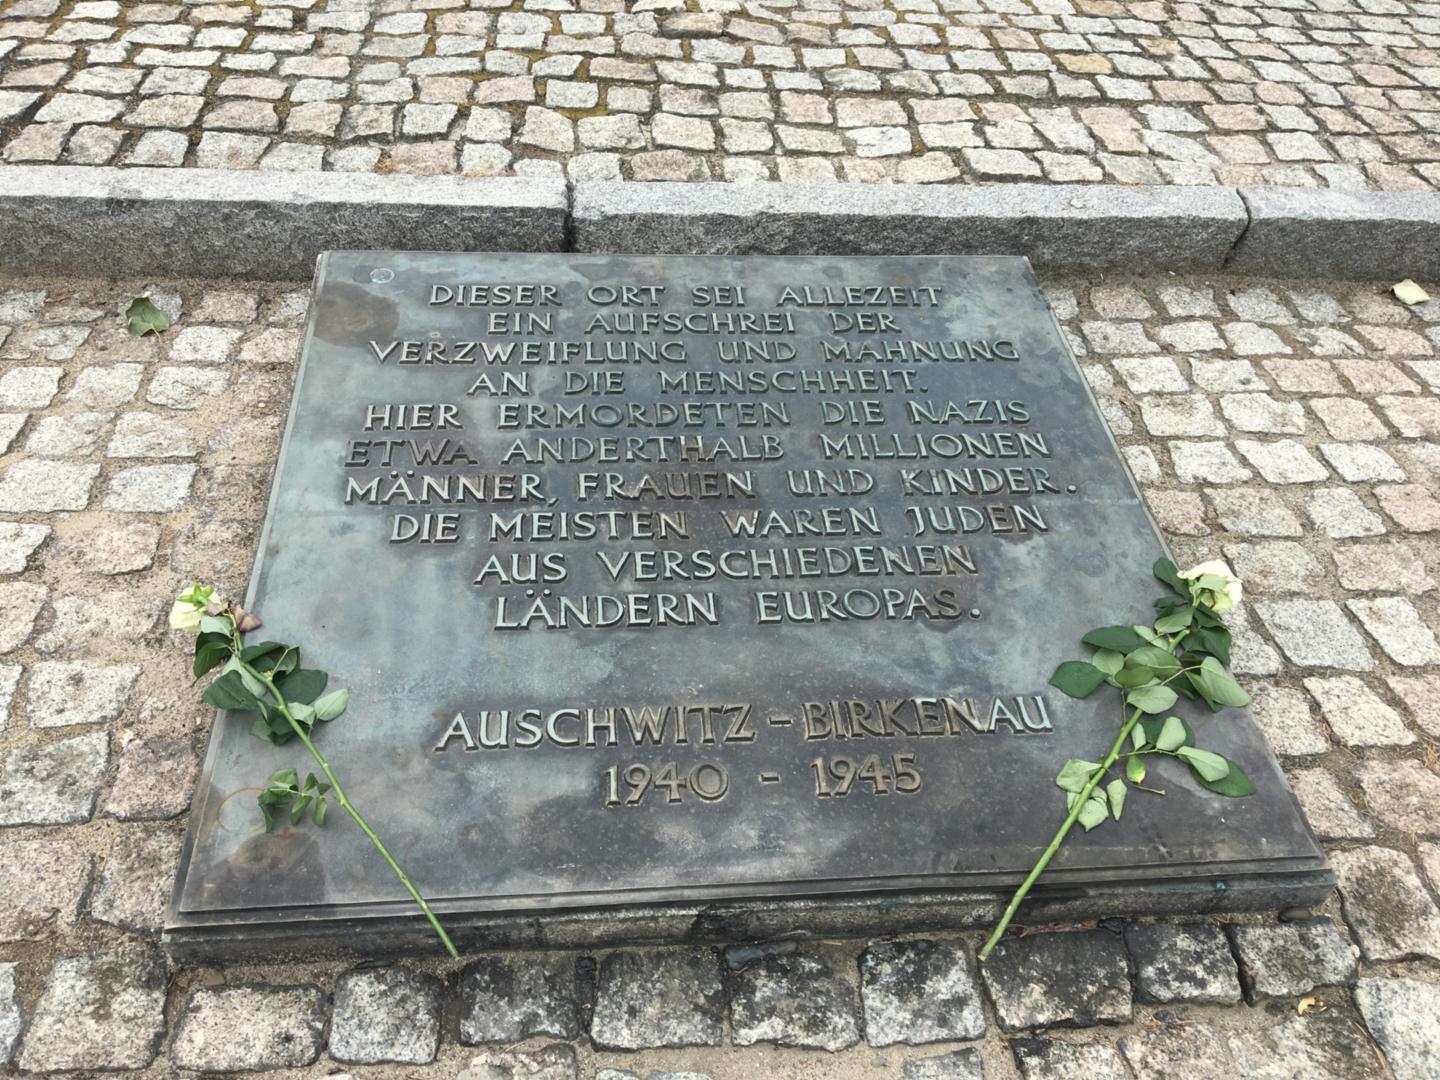 Auschwitz-Birkenau (c) Bischöfliches Gymnasium St. Ursula Geilenkirchen (Elke Sieben)